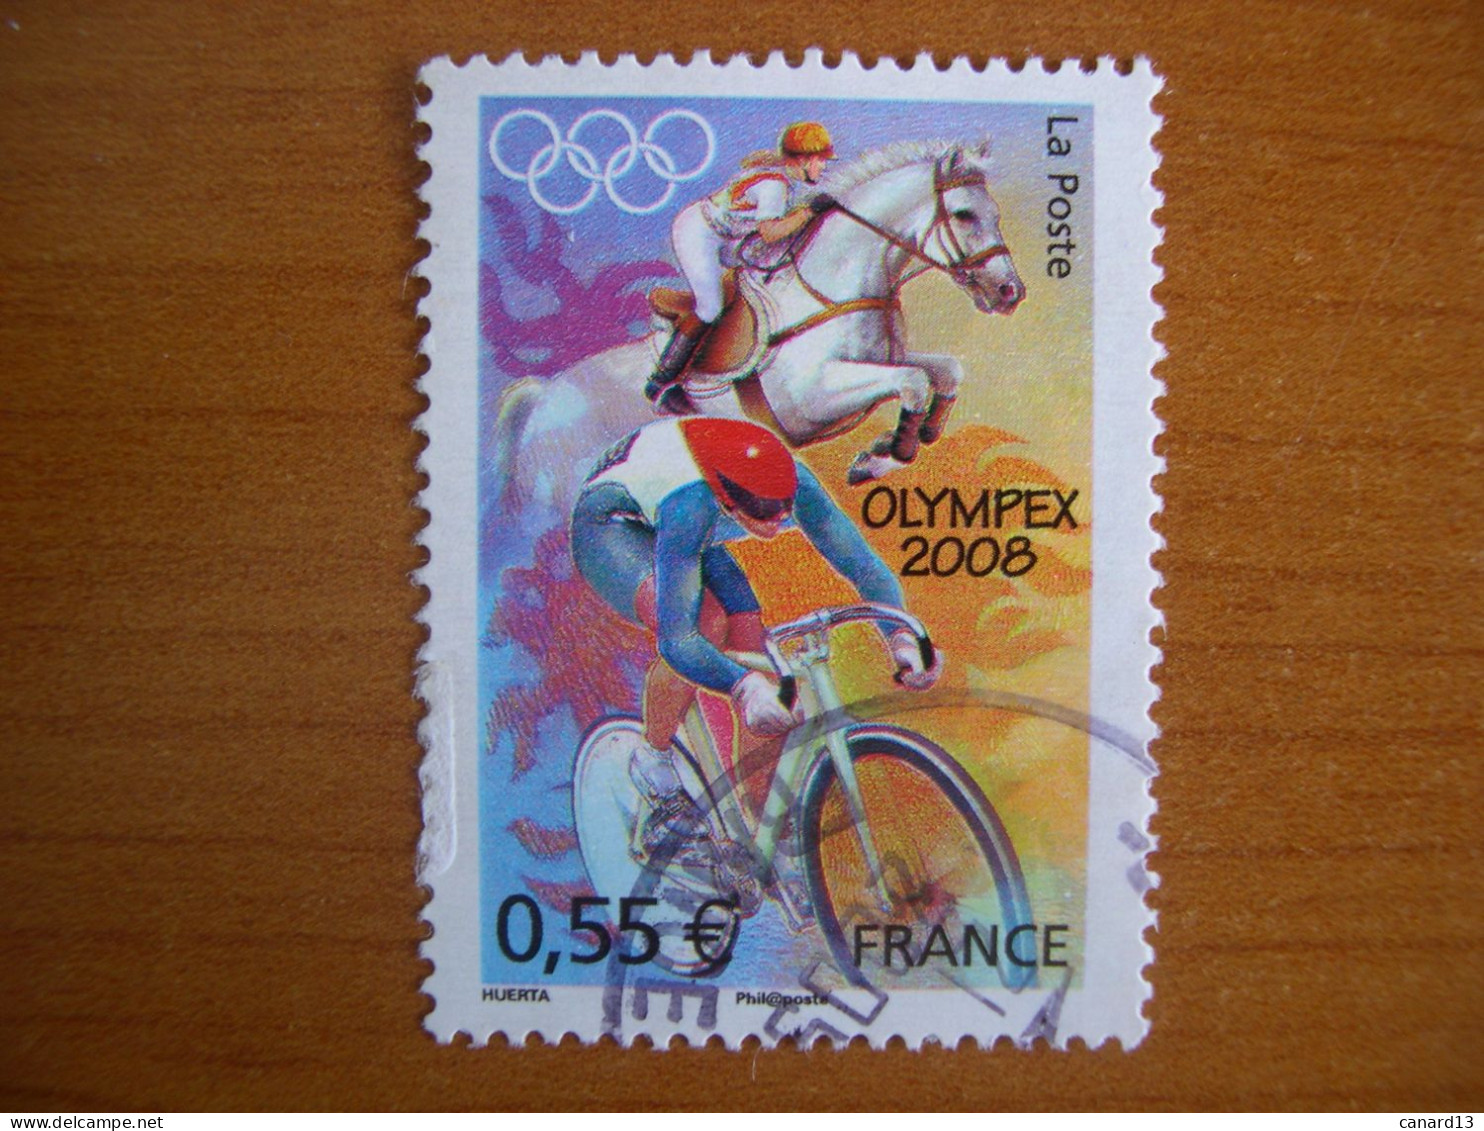 France Obl   N° 4222 Cachet Rond Noir - Used Stamps